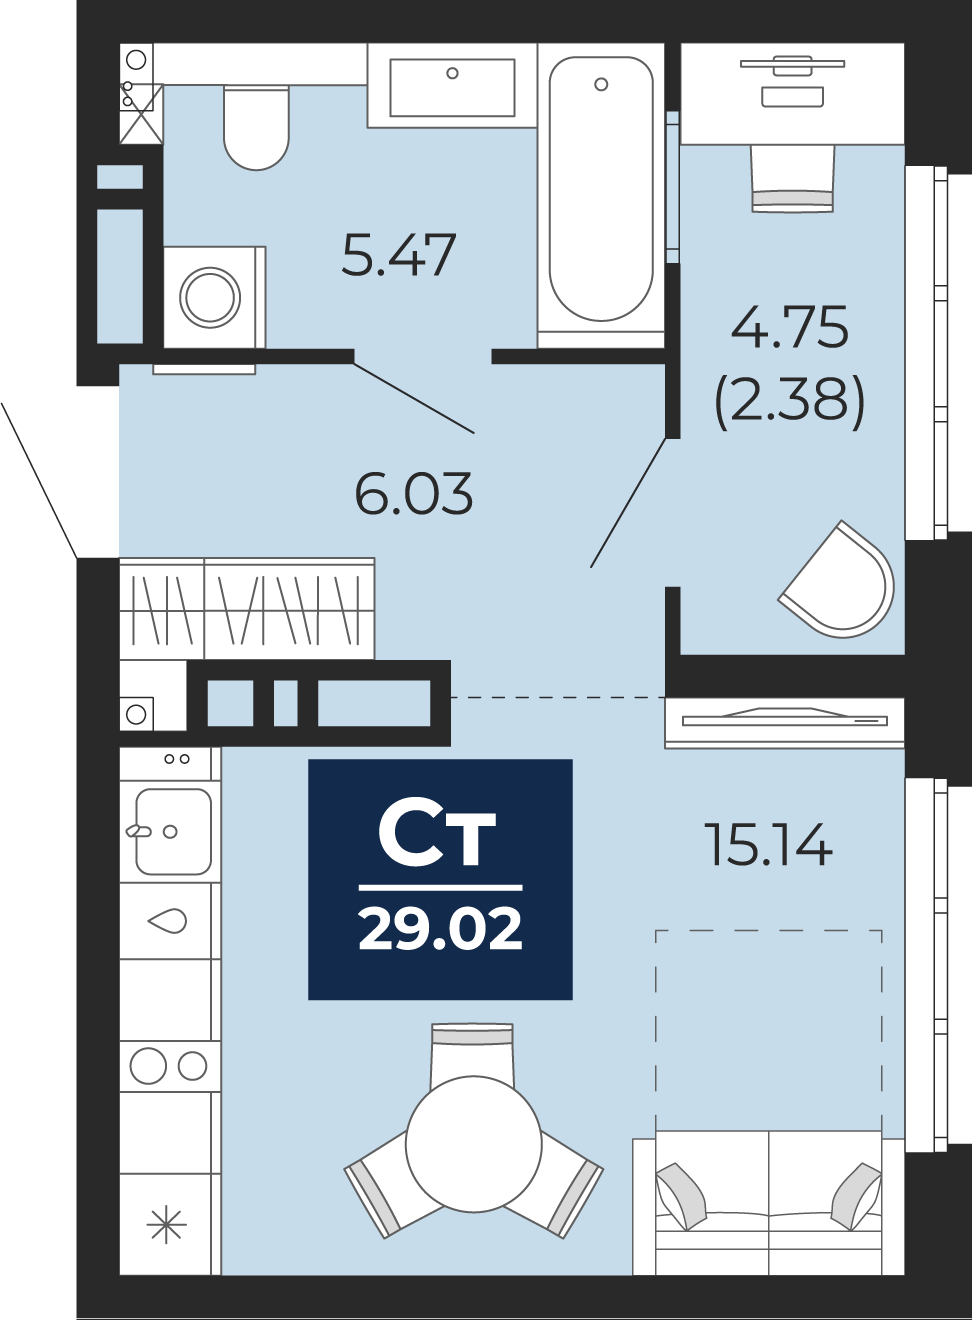 Квартира № 396, Студия, 29.02 кв. м, 15 этаж